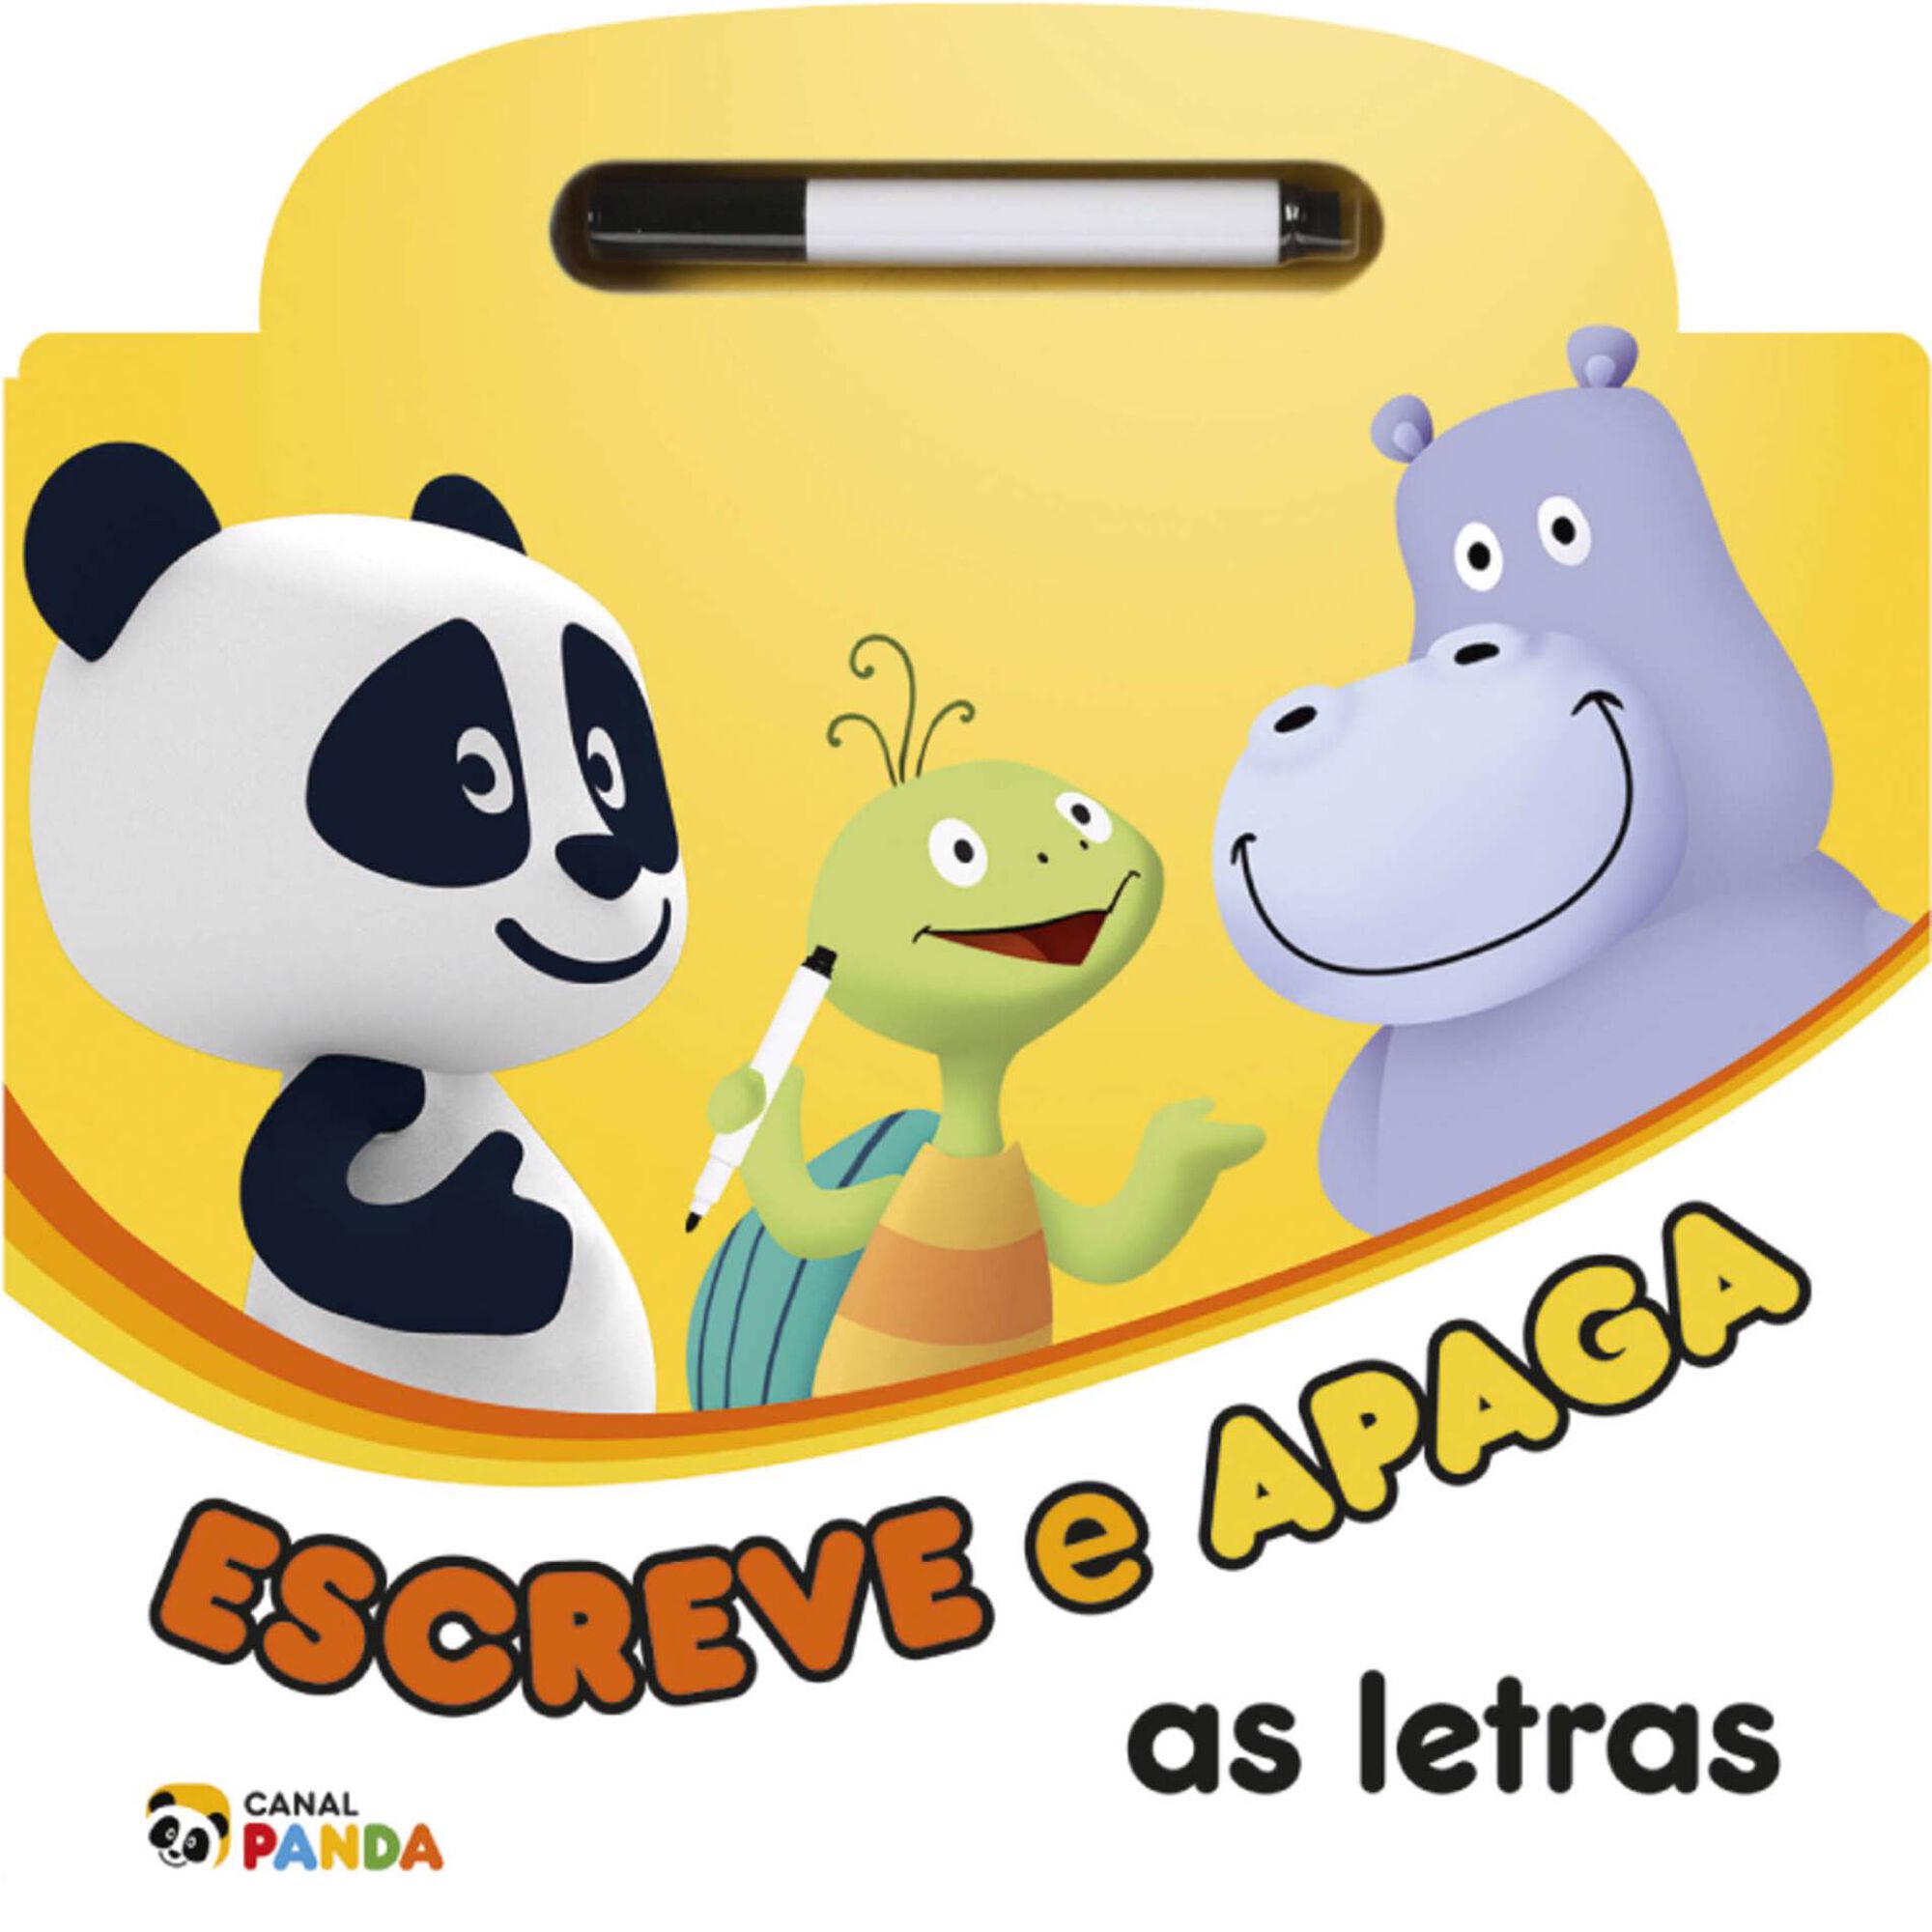 Panda - Escreve e Apaga as Letras